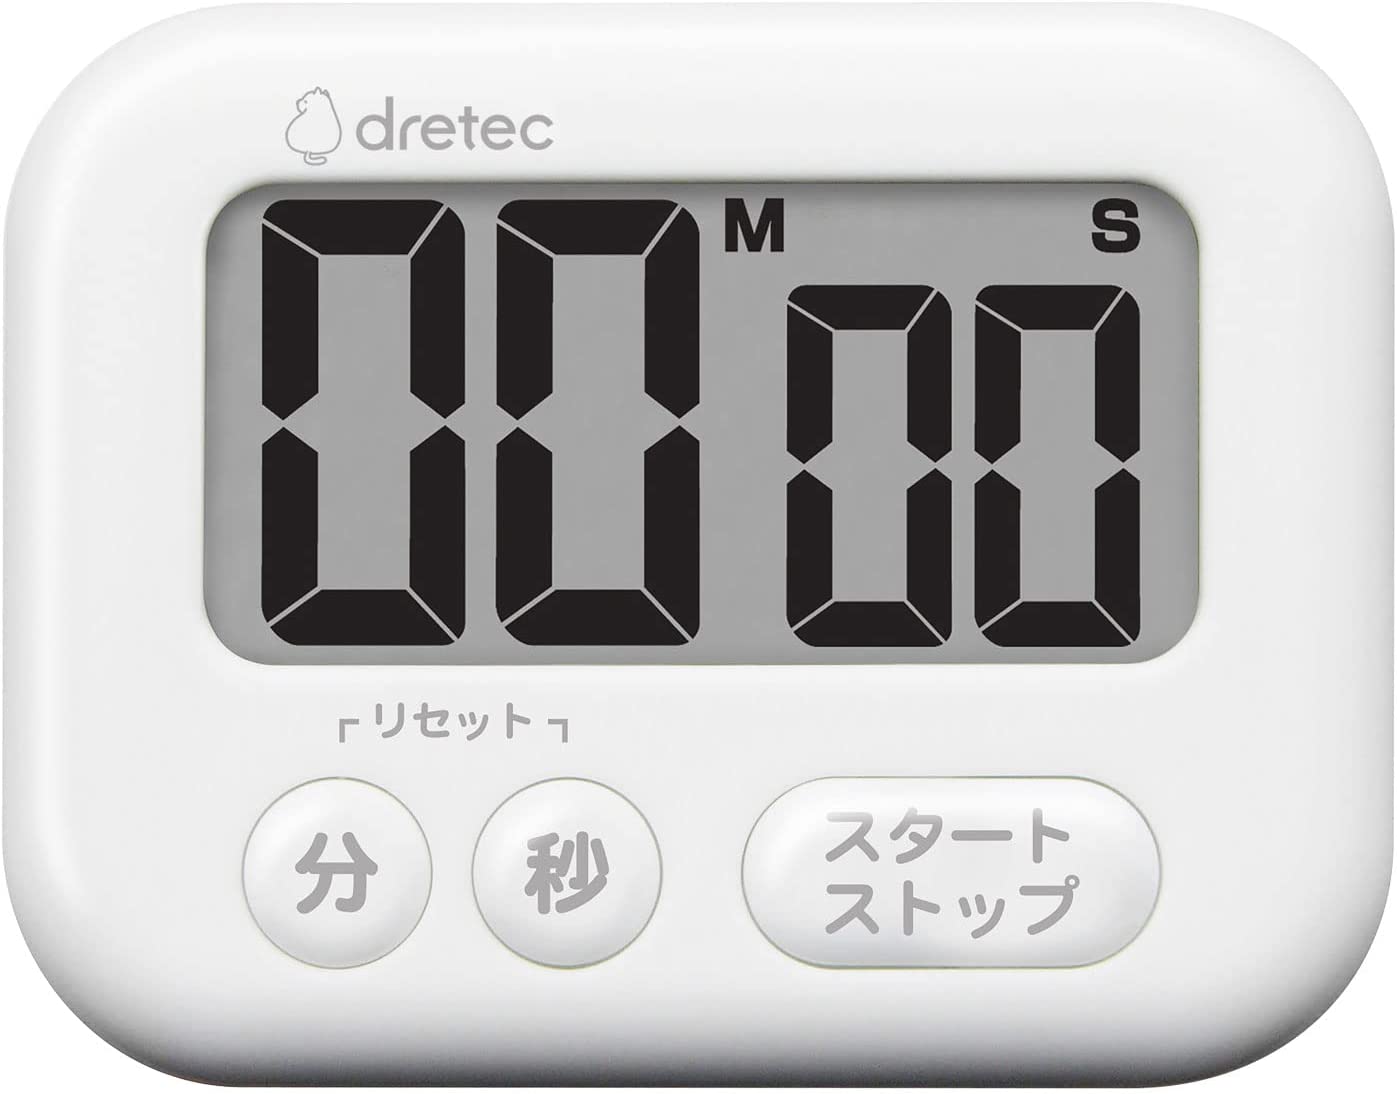 ドリテック タイマー 勉強 キッチン 大画面 マグネット デジタル シャボン ホワイト 3キー T-614(WT)